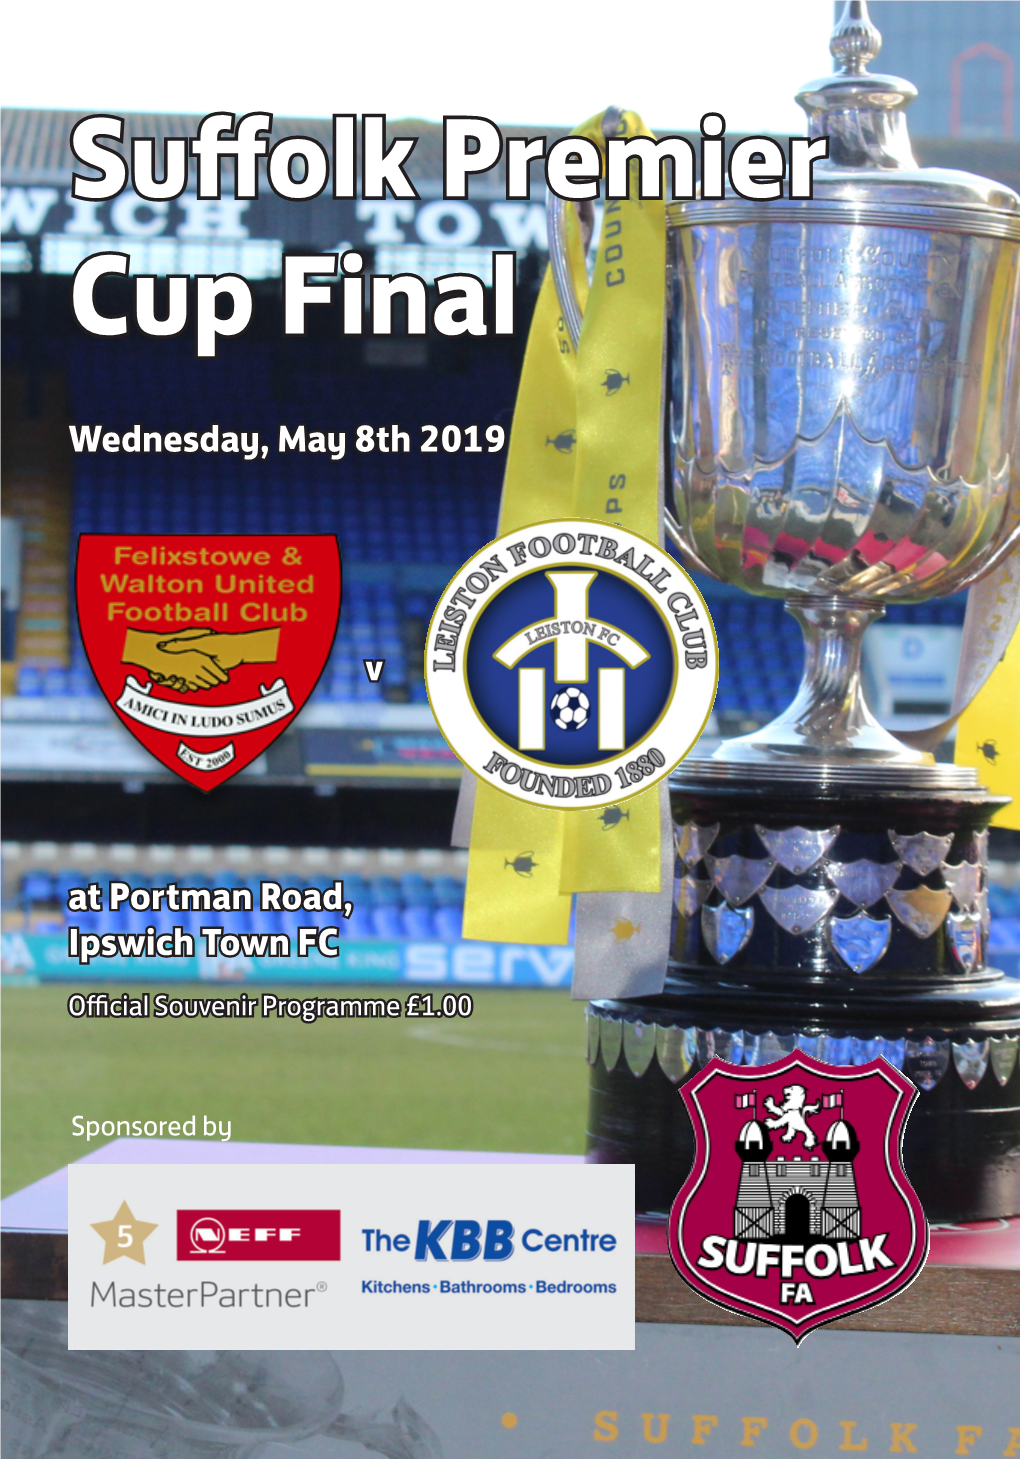 Suffolk Premier Cup Final